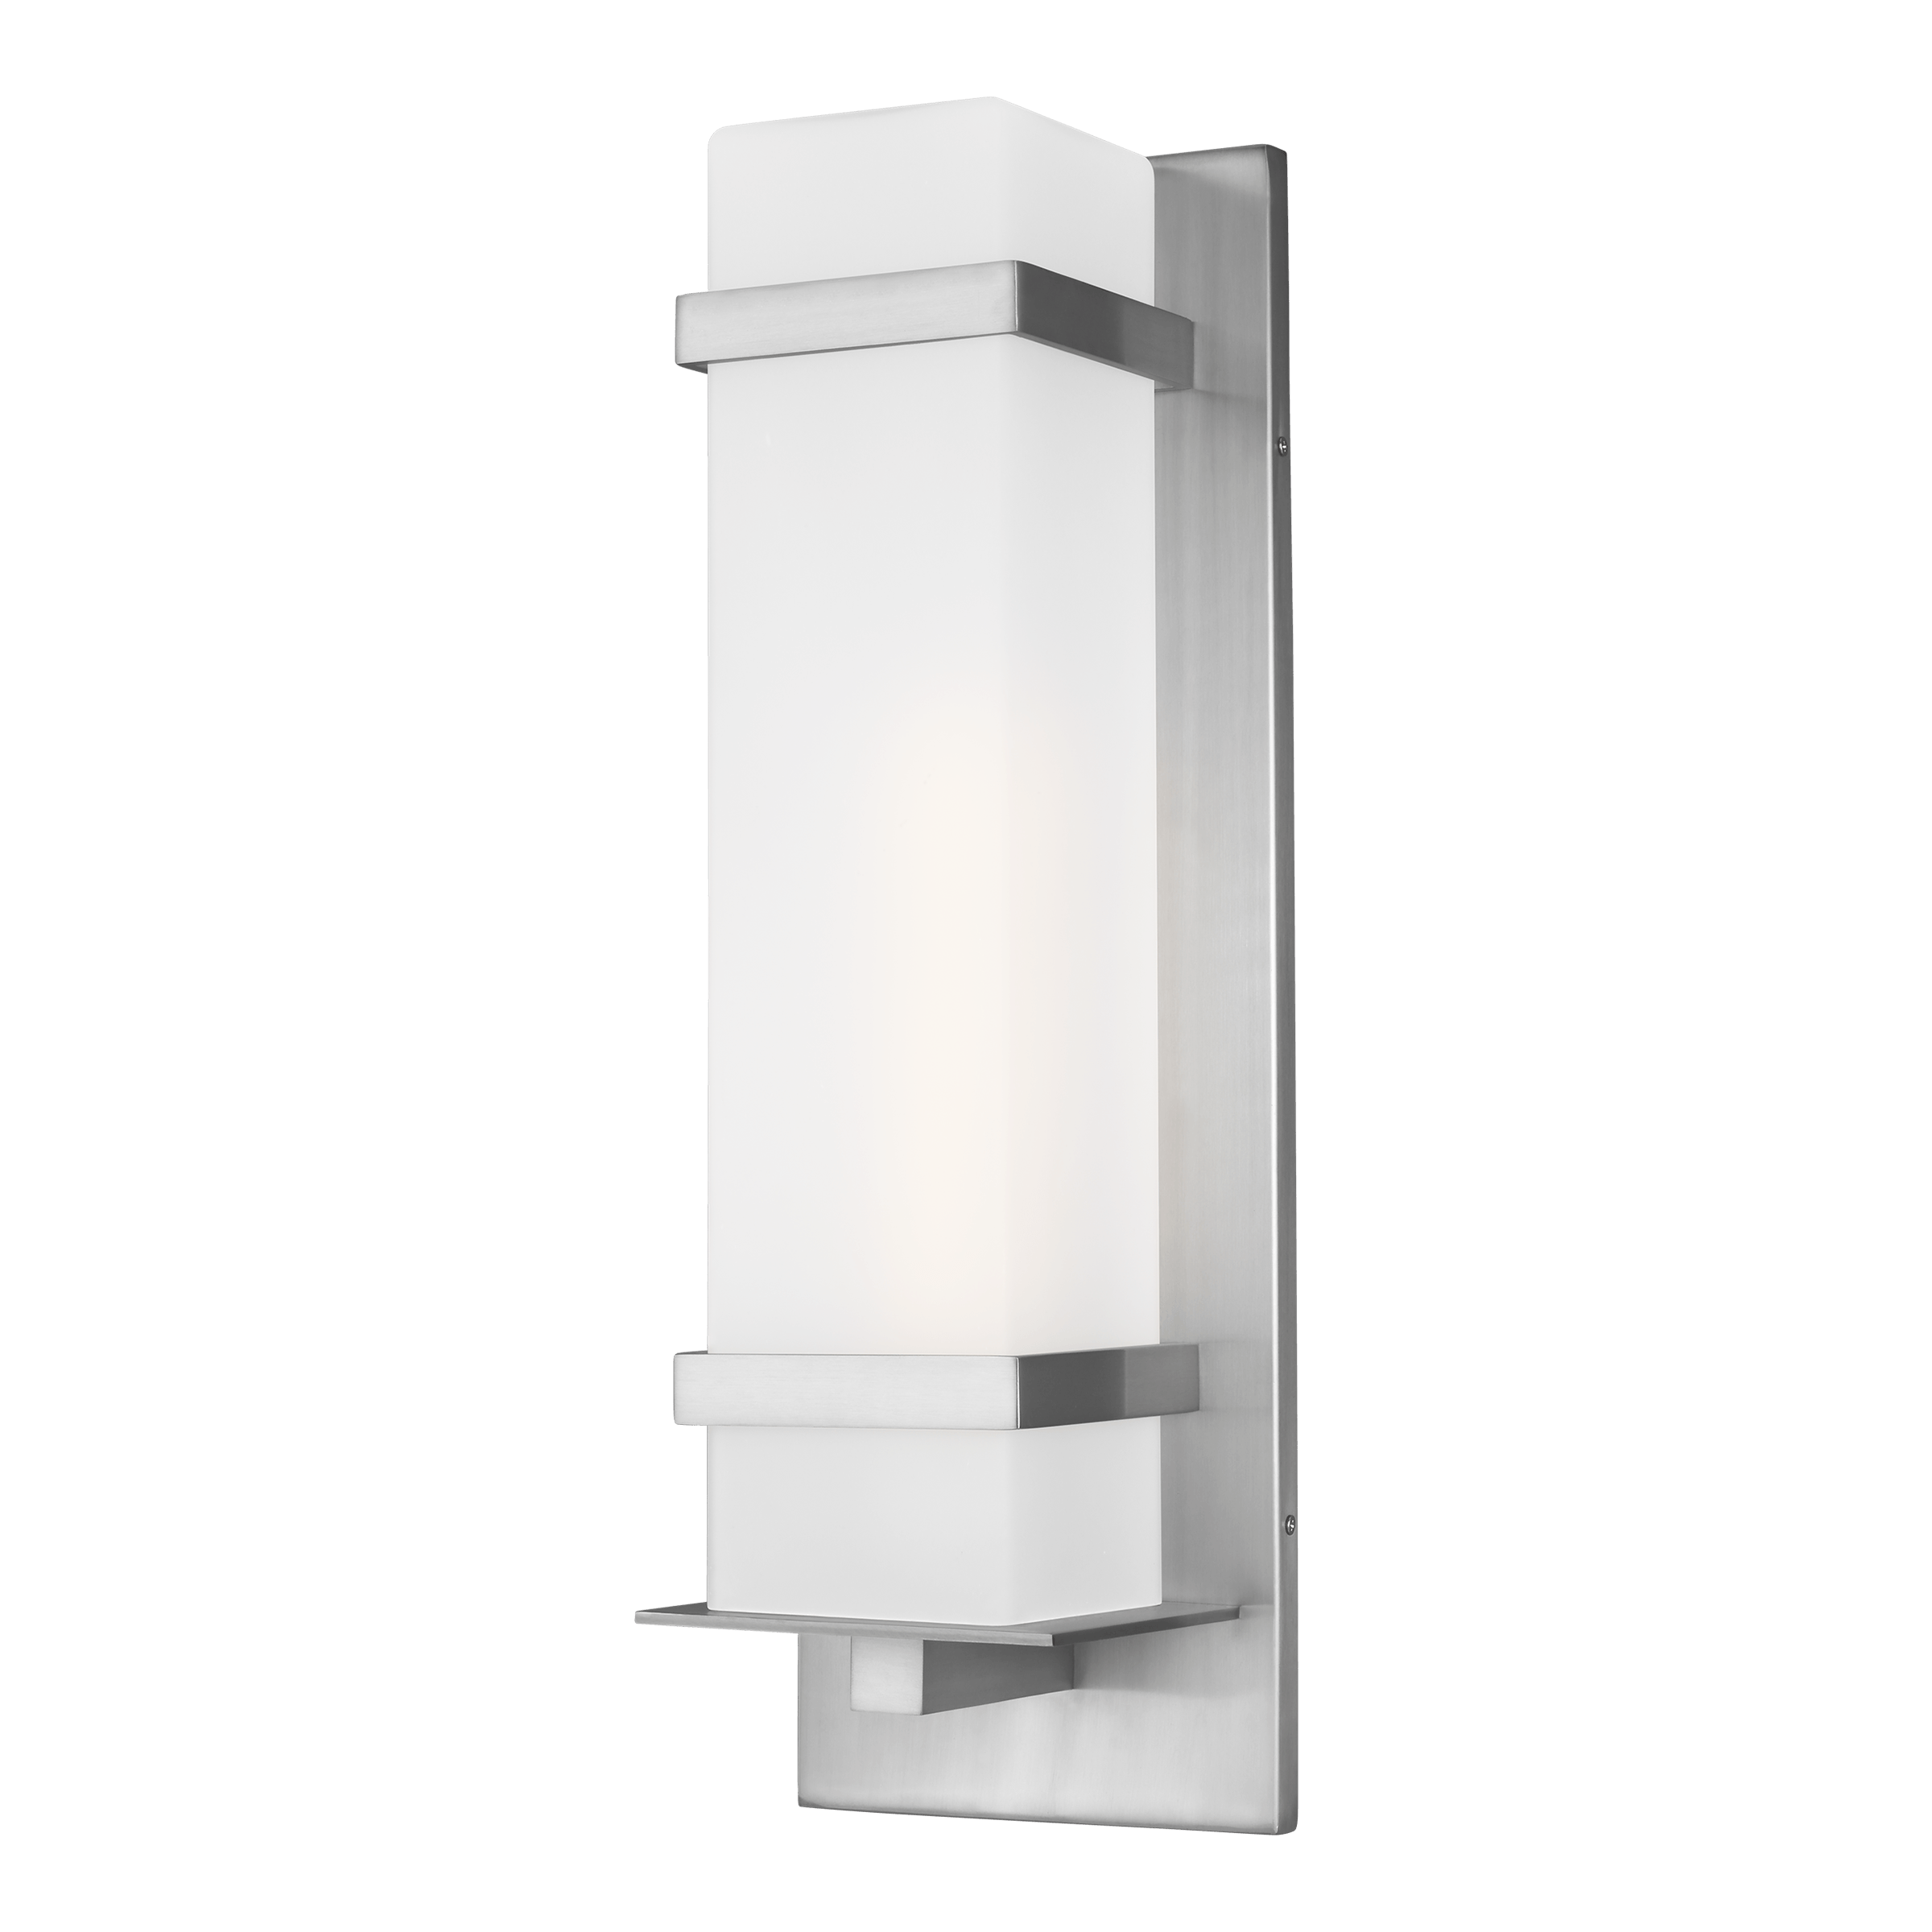 Alban Large One Light Outdoor Wall Lantern - Satin Aluminum Outdoor Sea Gull Lighting 